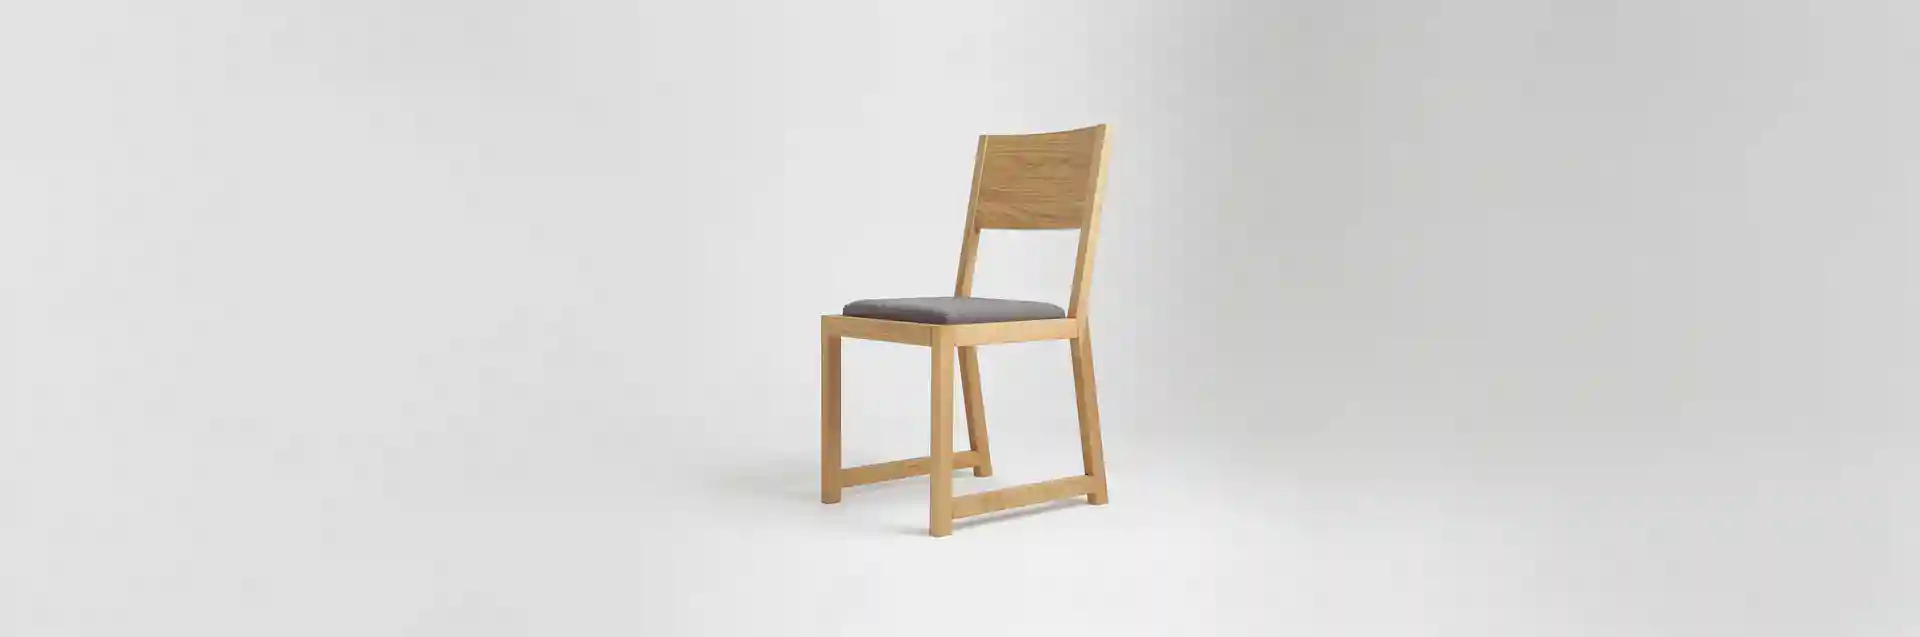 [Translate to german:] Krzesło drewniane MILONI FRAME, Kolor: 03: Natural tapicerowane, Wymiary: Dł: 45 x Sz: 44 x Wys: 45 cm, polskie krzesła z drewna, drewniane krzesło, dębowe krzesła